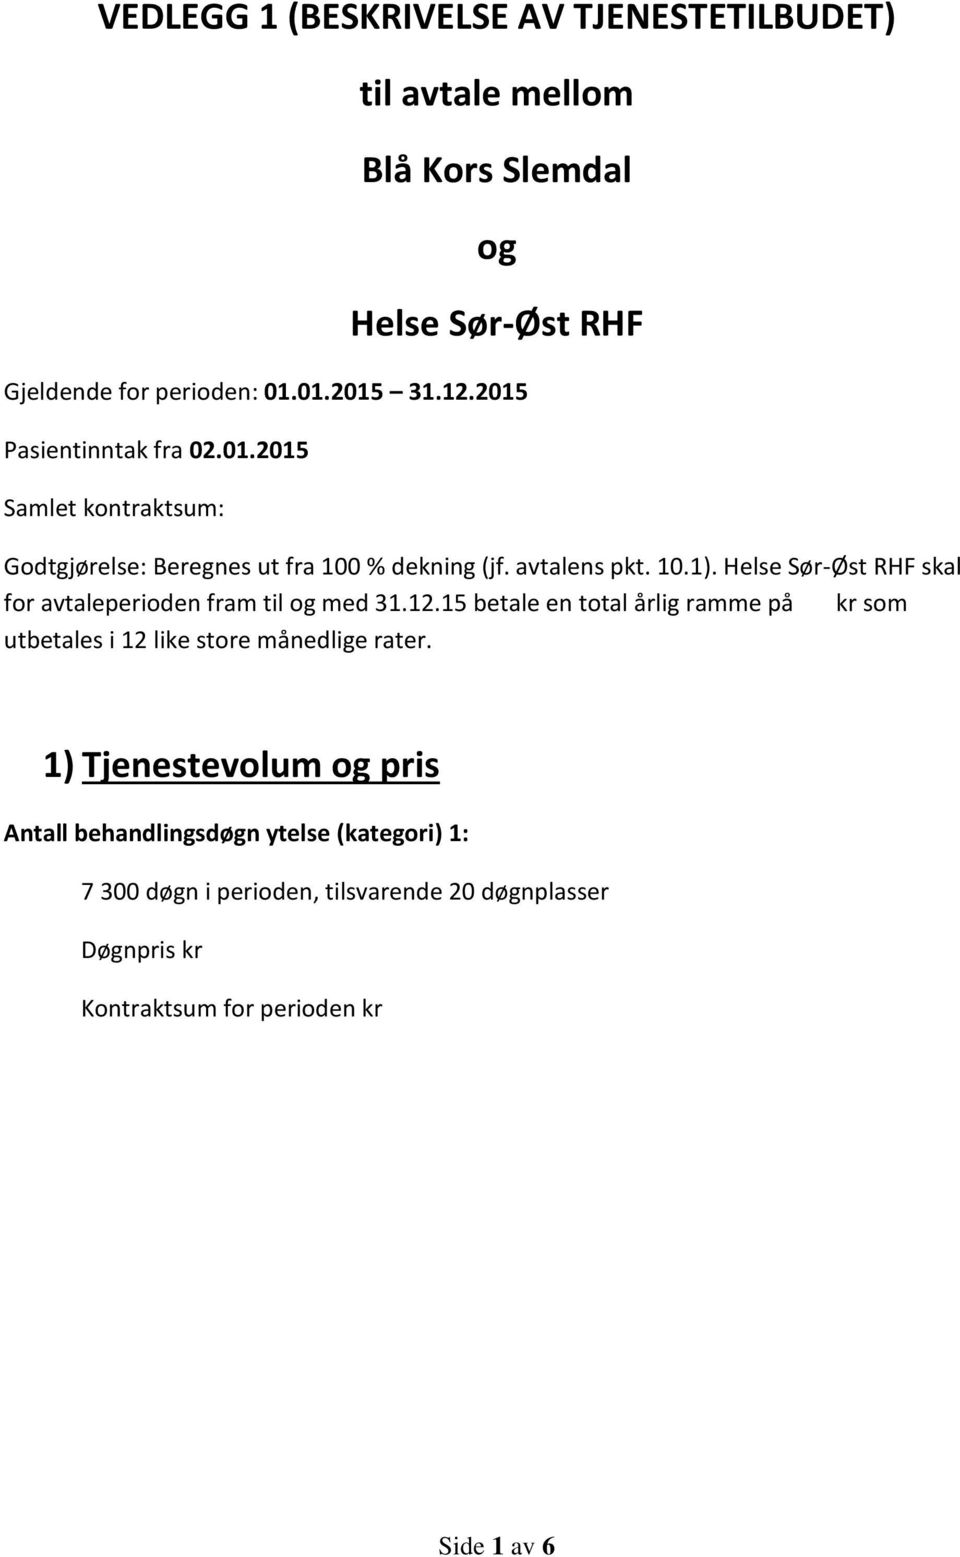 Helse Sør-Øst RHF skal for avtaleperioden fram til og med 31.12.